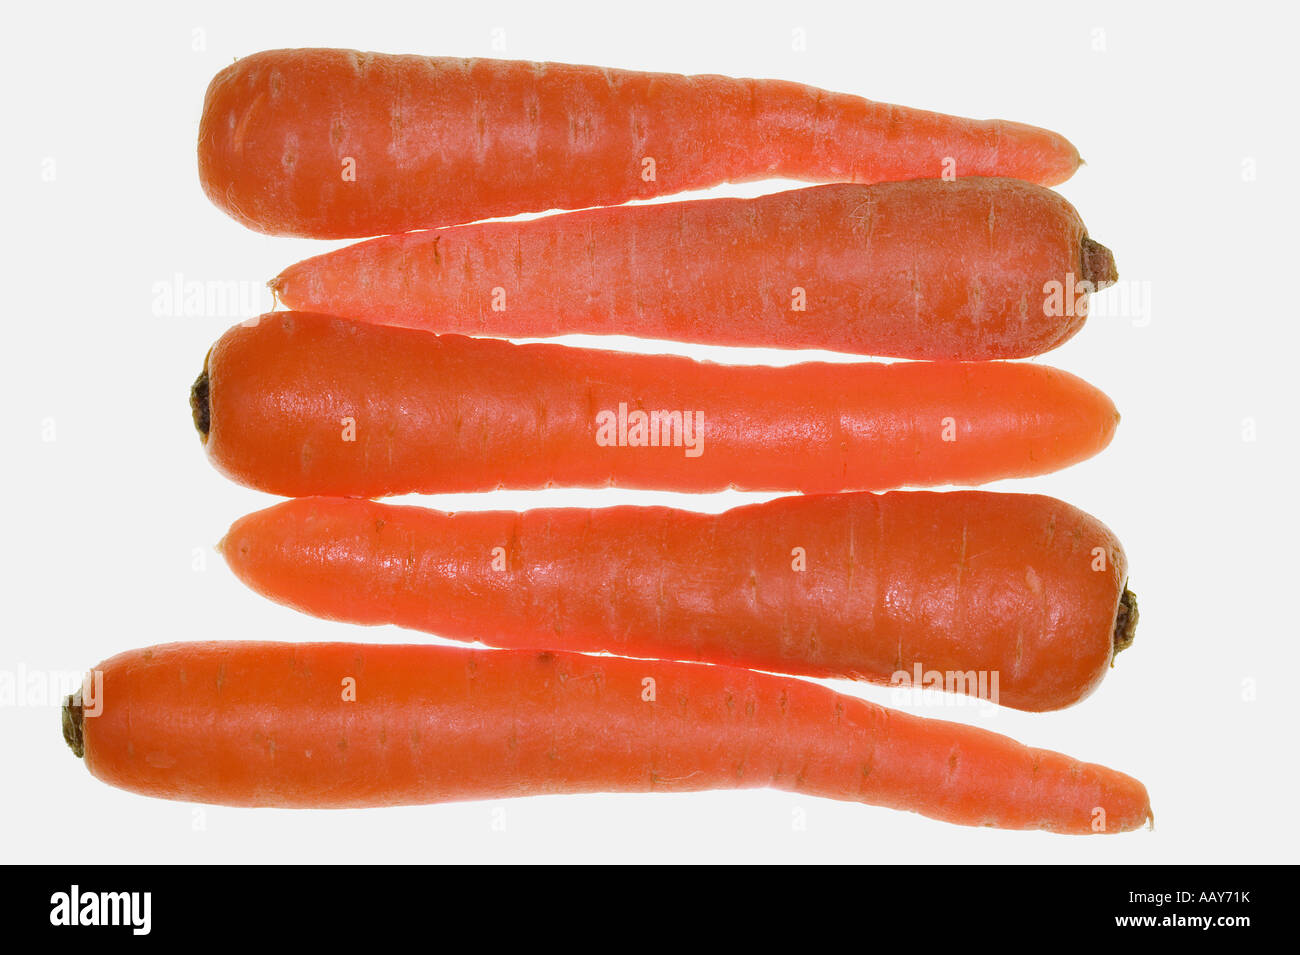 5 Karotten Hintergrundbeleuchtung und isoliert auf weiss Stockfoto